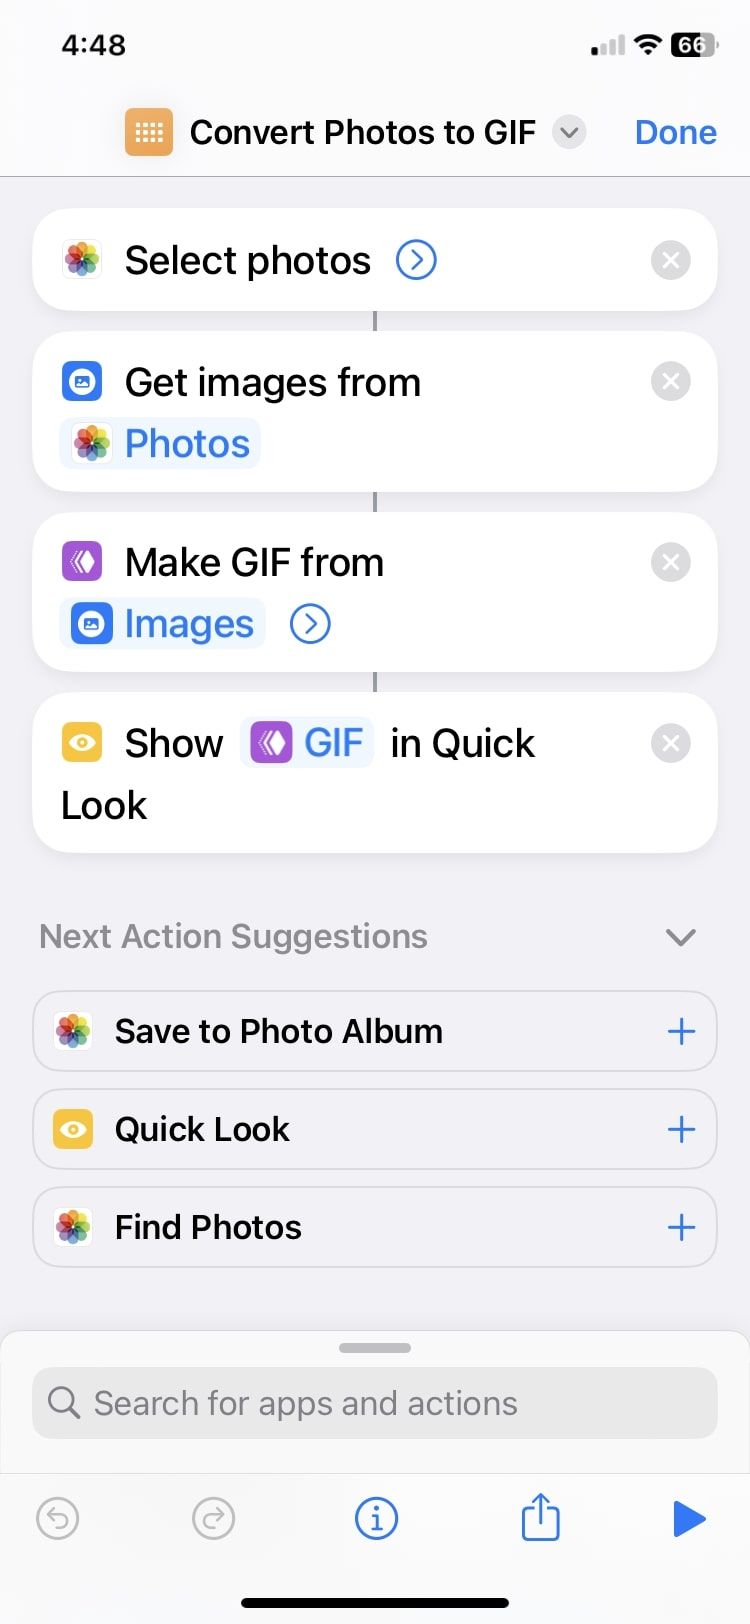 convert photos to GIF shortcut actions